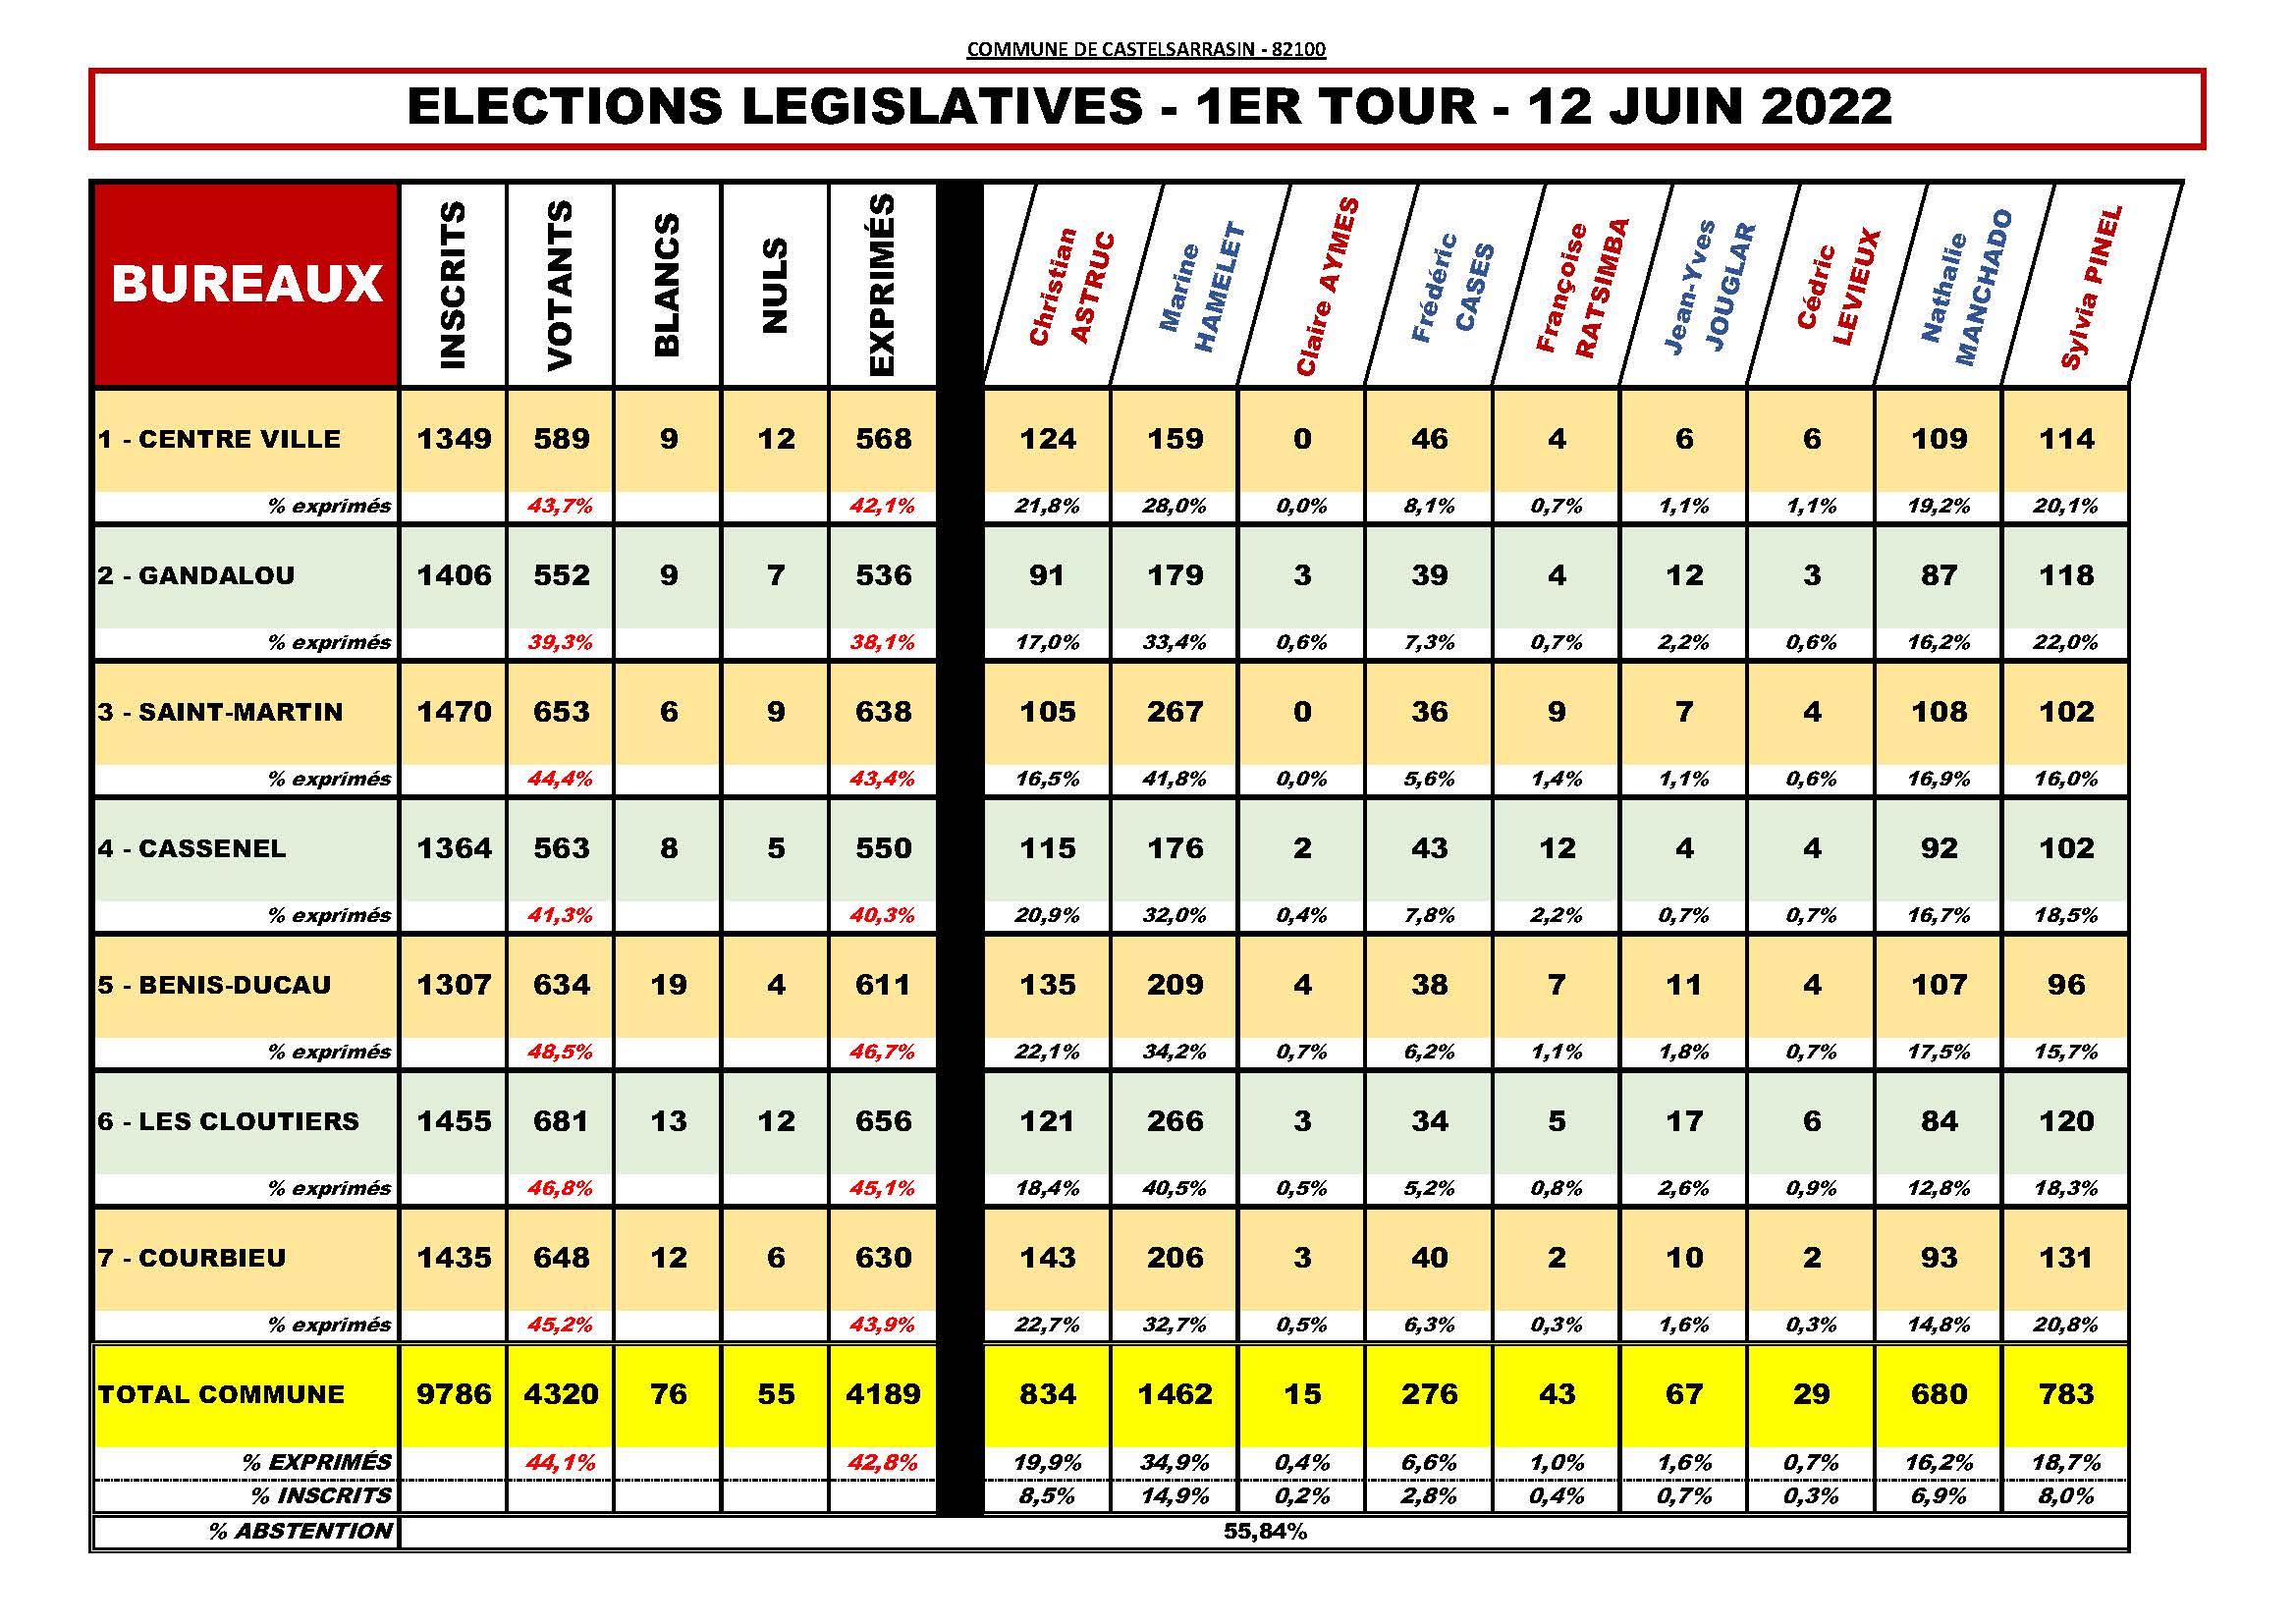 Tableaux des scores aux élections législatives dans la commune de Castelsarrasin